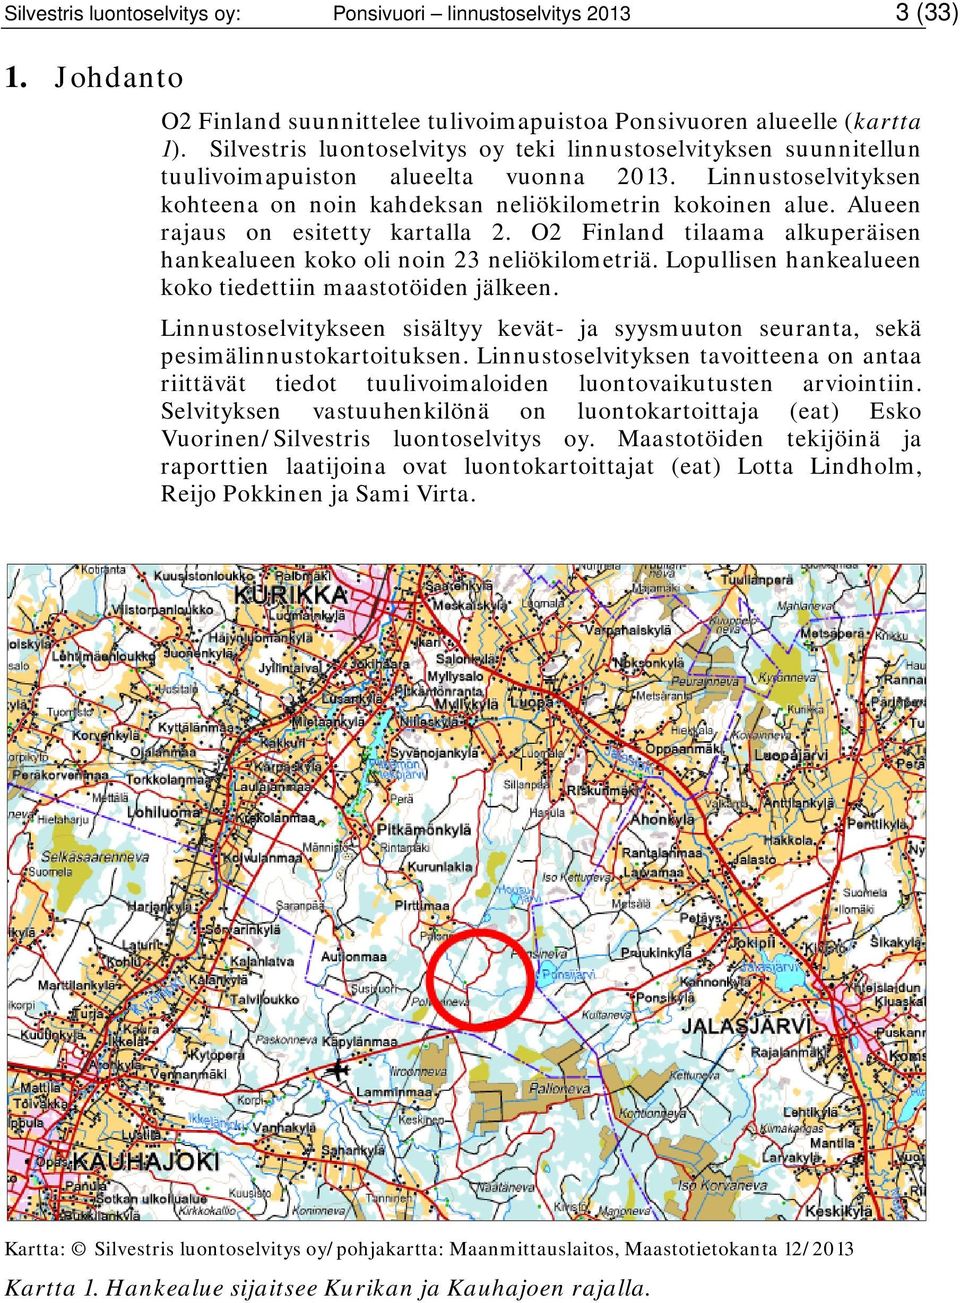 Alueen rajaus on esitetty kartalla 2. O2 Finland tilaama alkuperäisen hankealueen koko oli noin 23 neliökilometriä. Lopullisen hankealueen koko tiedettiin maastotöiden jälkeen.